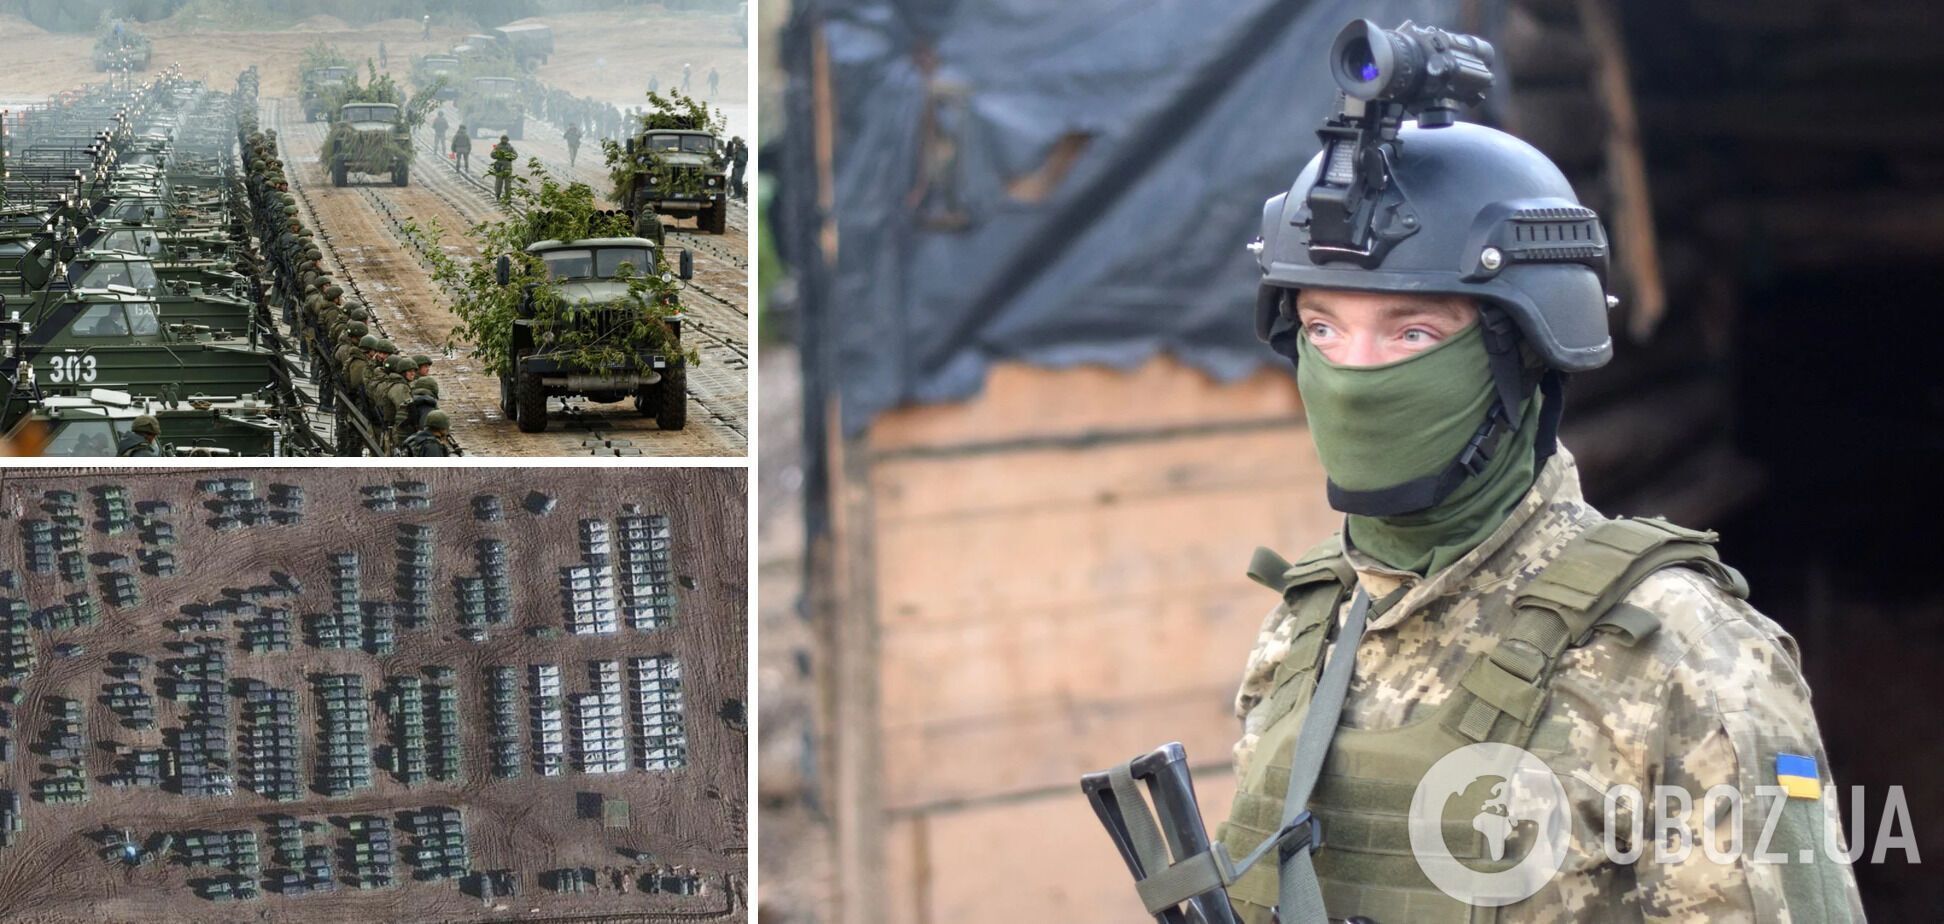 Специалисты считают маловероятным полномасштабное наступление РФ на Украину